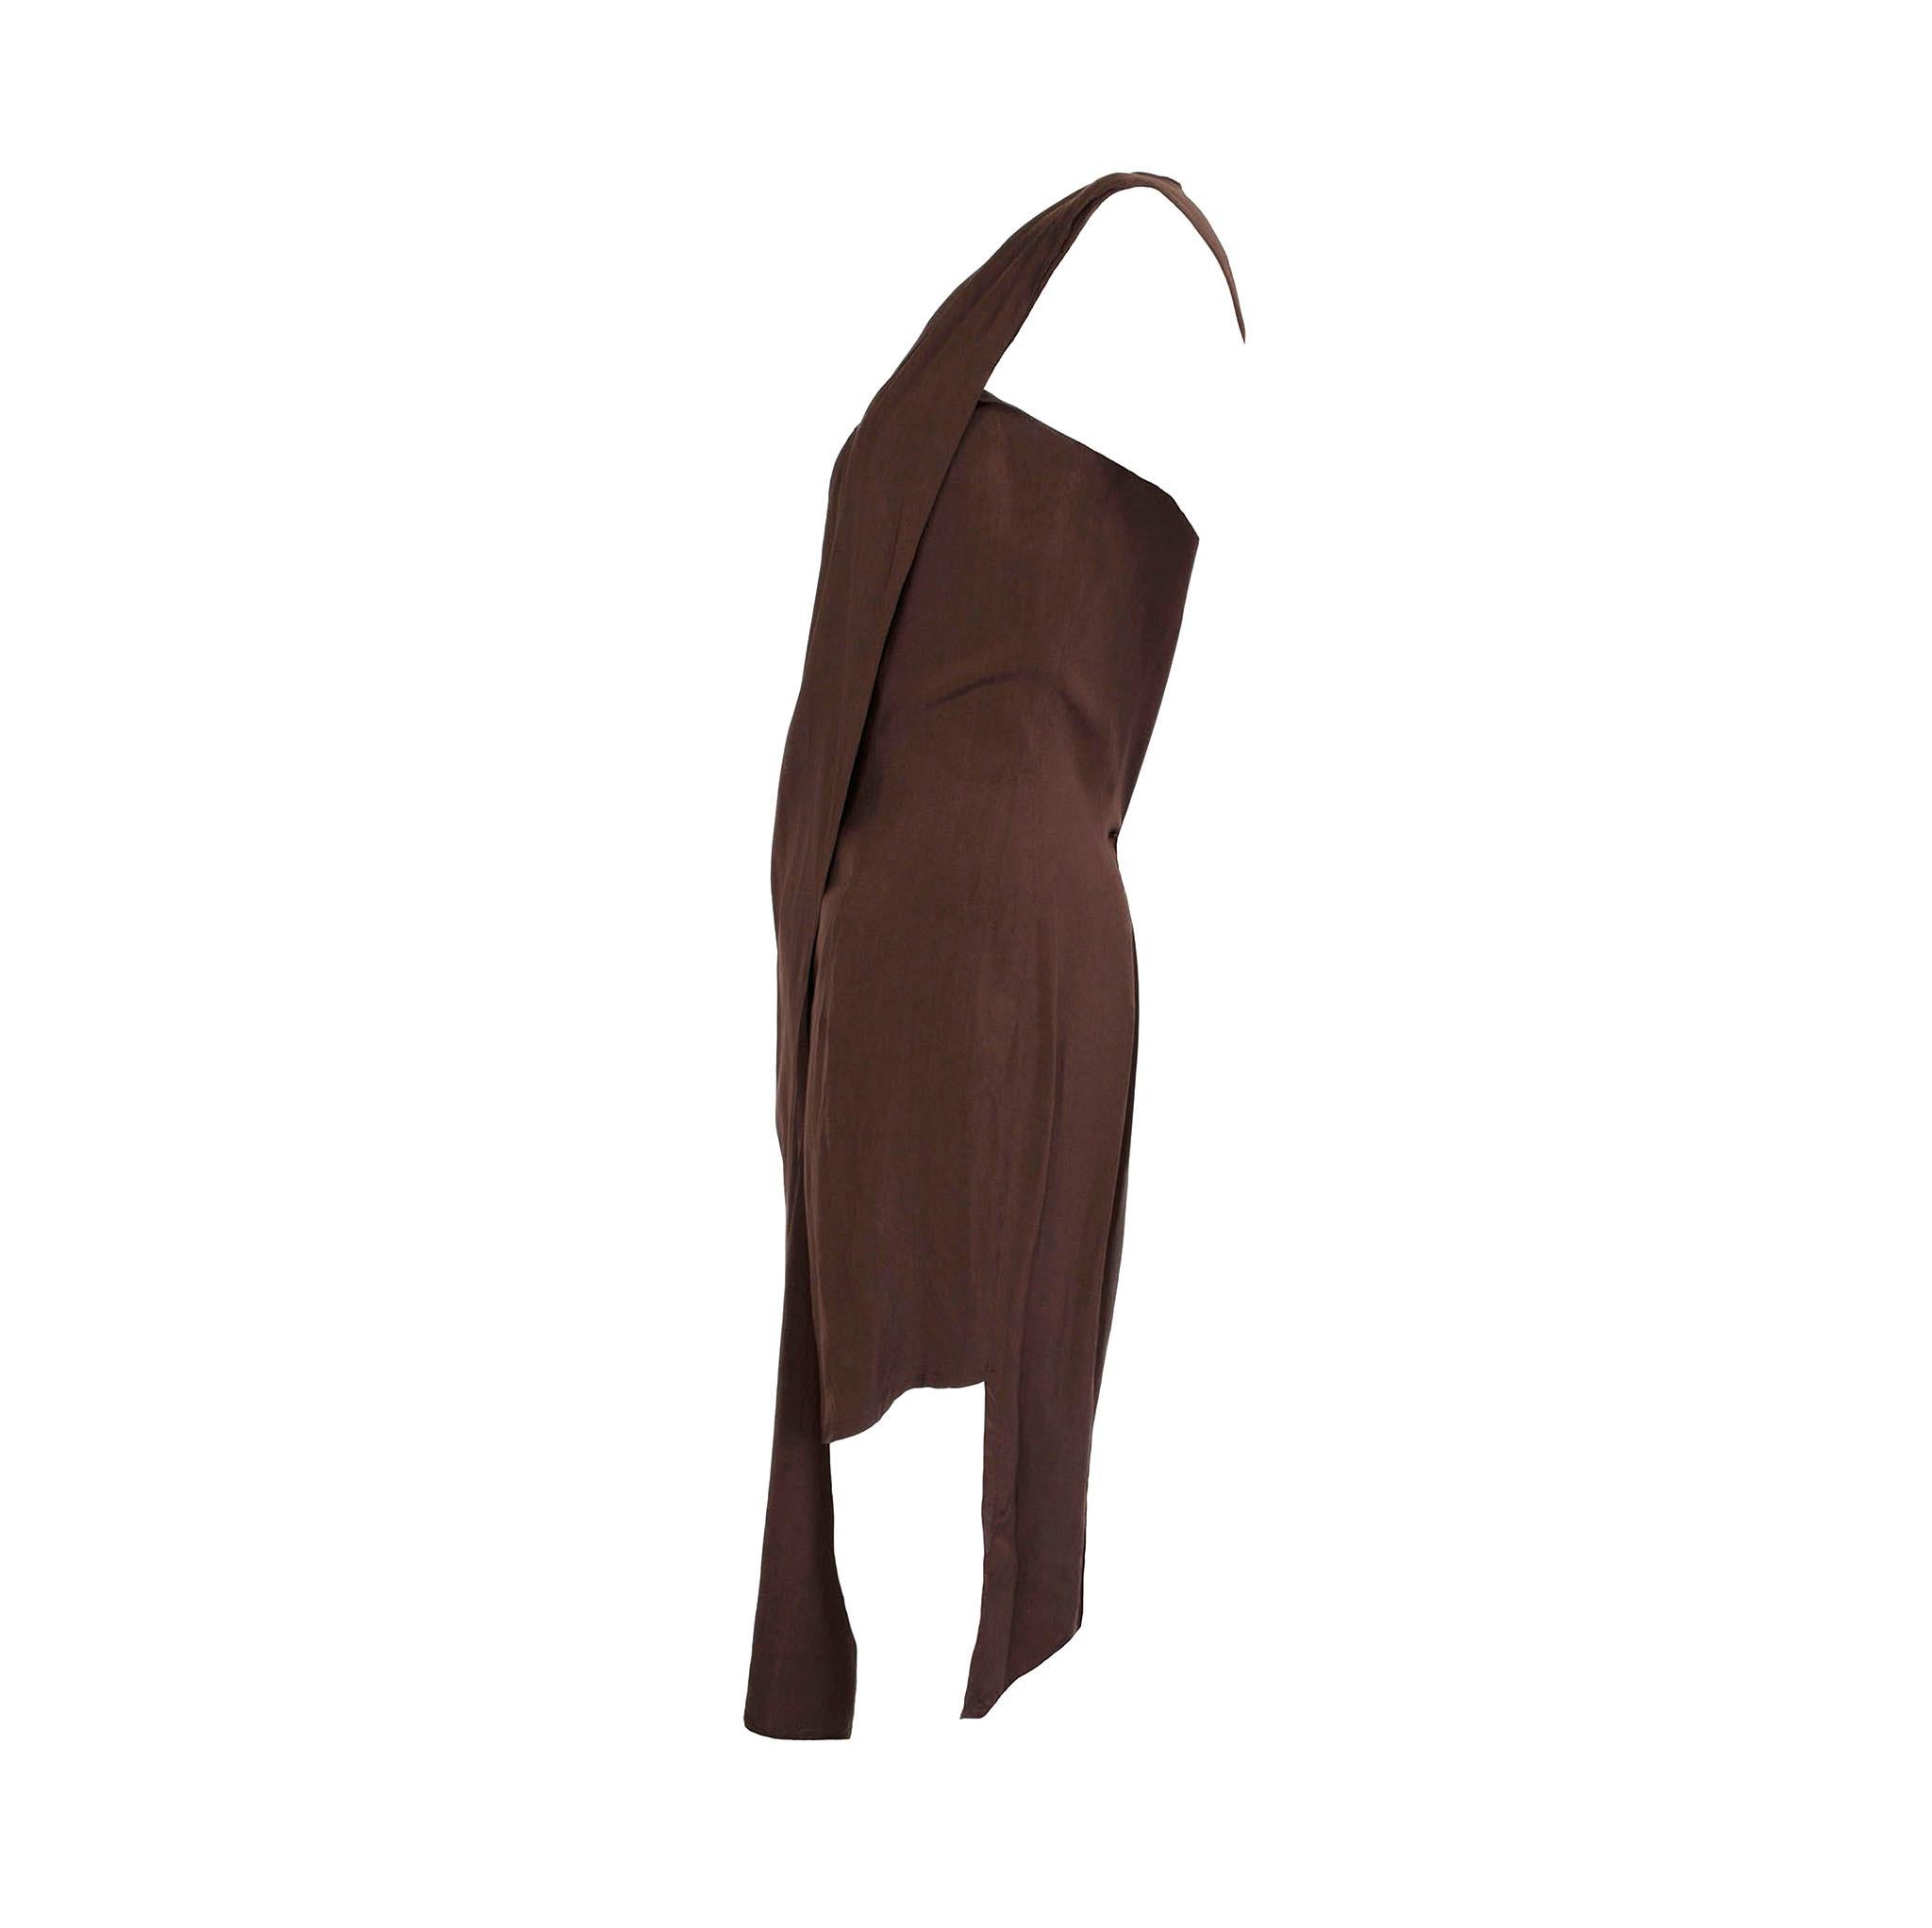 Product details: Aldofo Dominguez - 1980s Vintage - Two-Way - Front Button / Fasten - Silk Dress 
Label: Aldofo Dominguez
Era: c.1980
Fabric Content: Silk
Size: 40 - UK 10
Bust: 36”
Waist: 31”
Hips: 37”
Side Seam: 42”
Condition: Rare Collectors